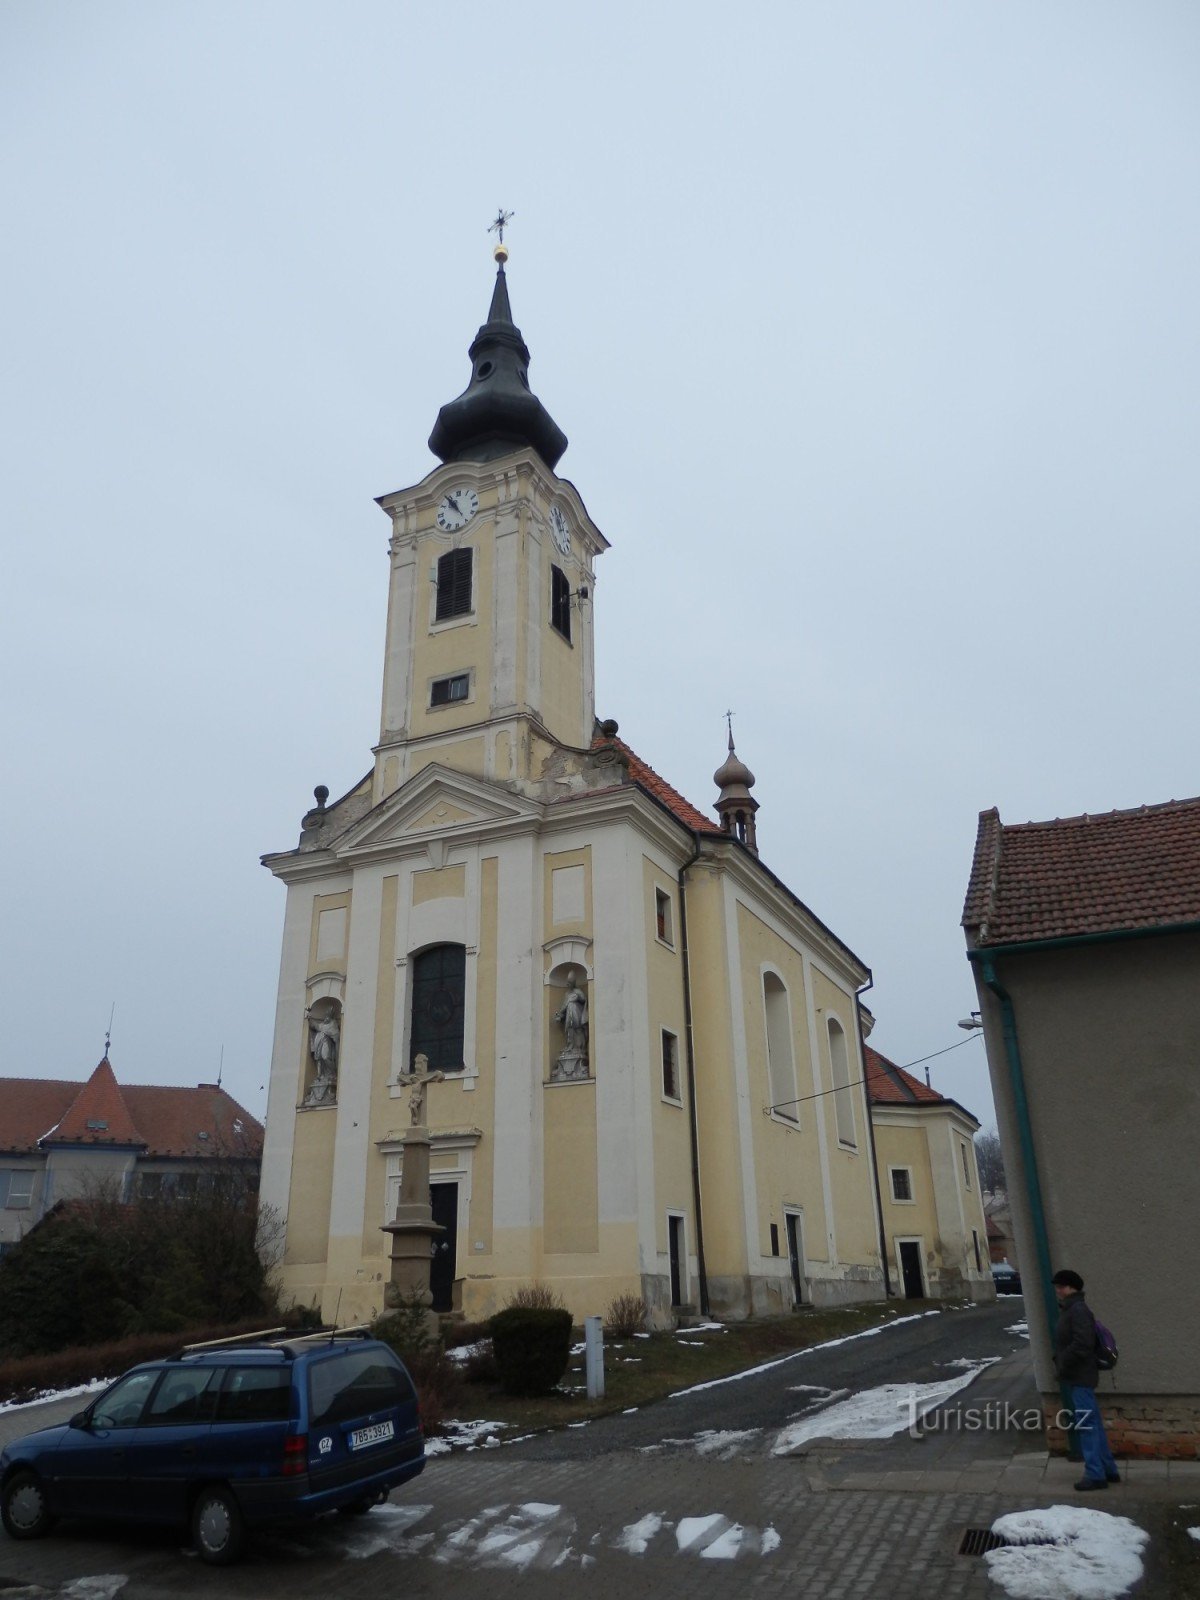 Cerkev sv. Jakub Větší in Matouš v Nové Hvězdlice